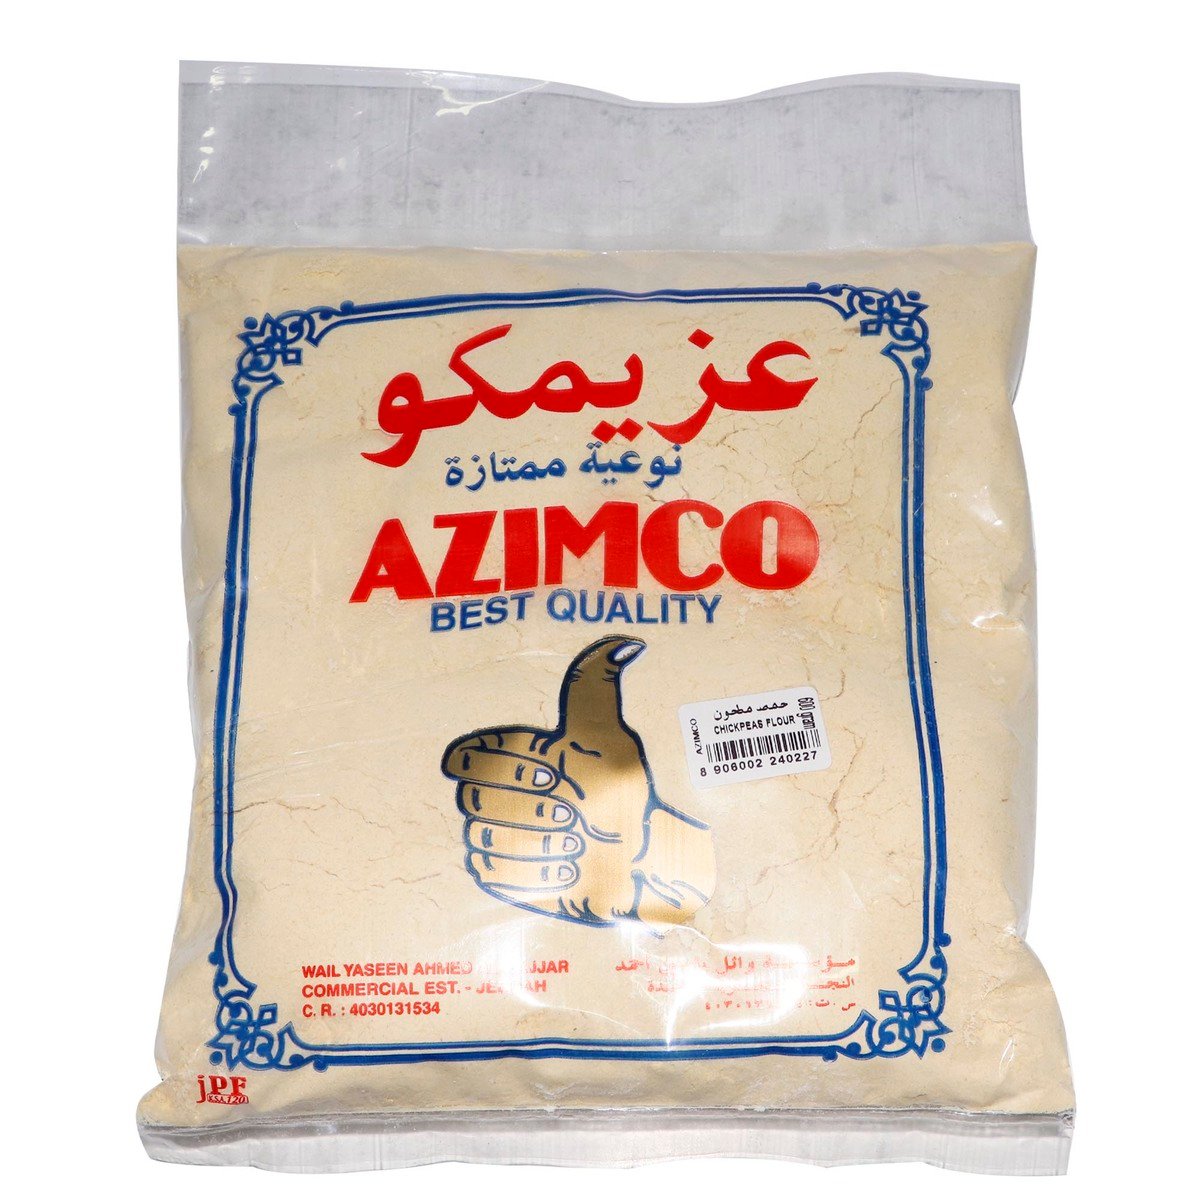 Azimco Chickpeas Flour 600g